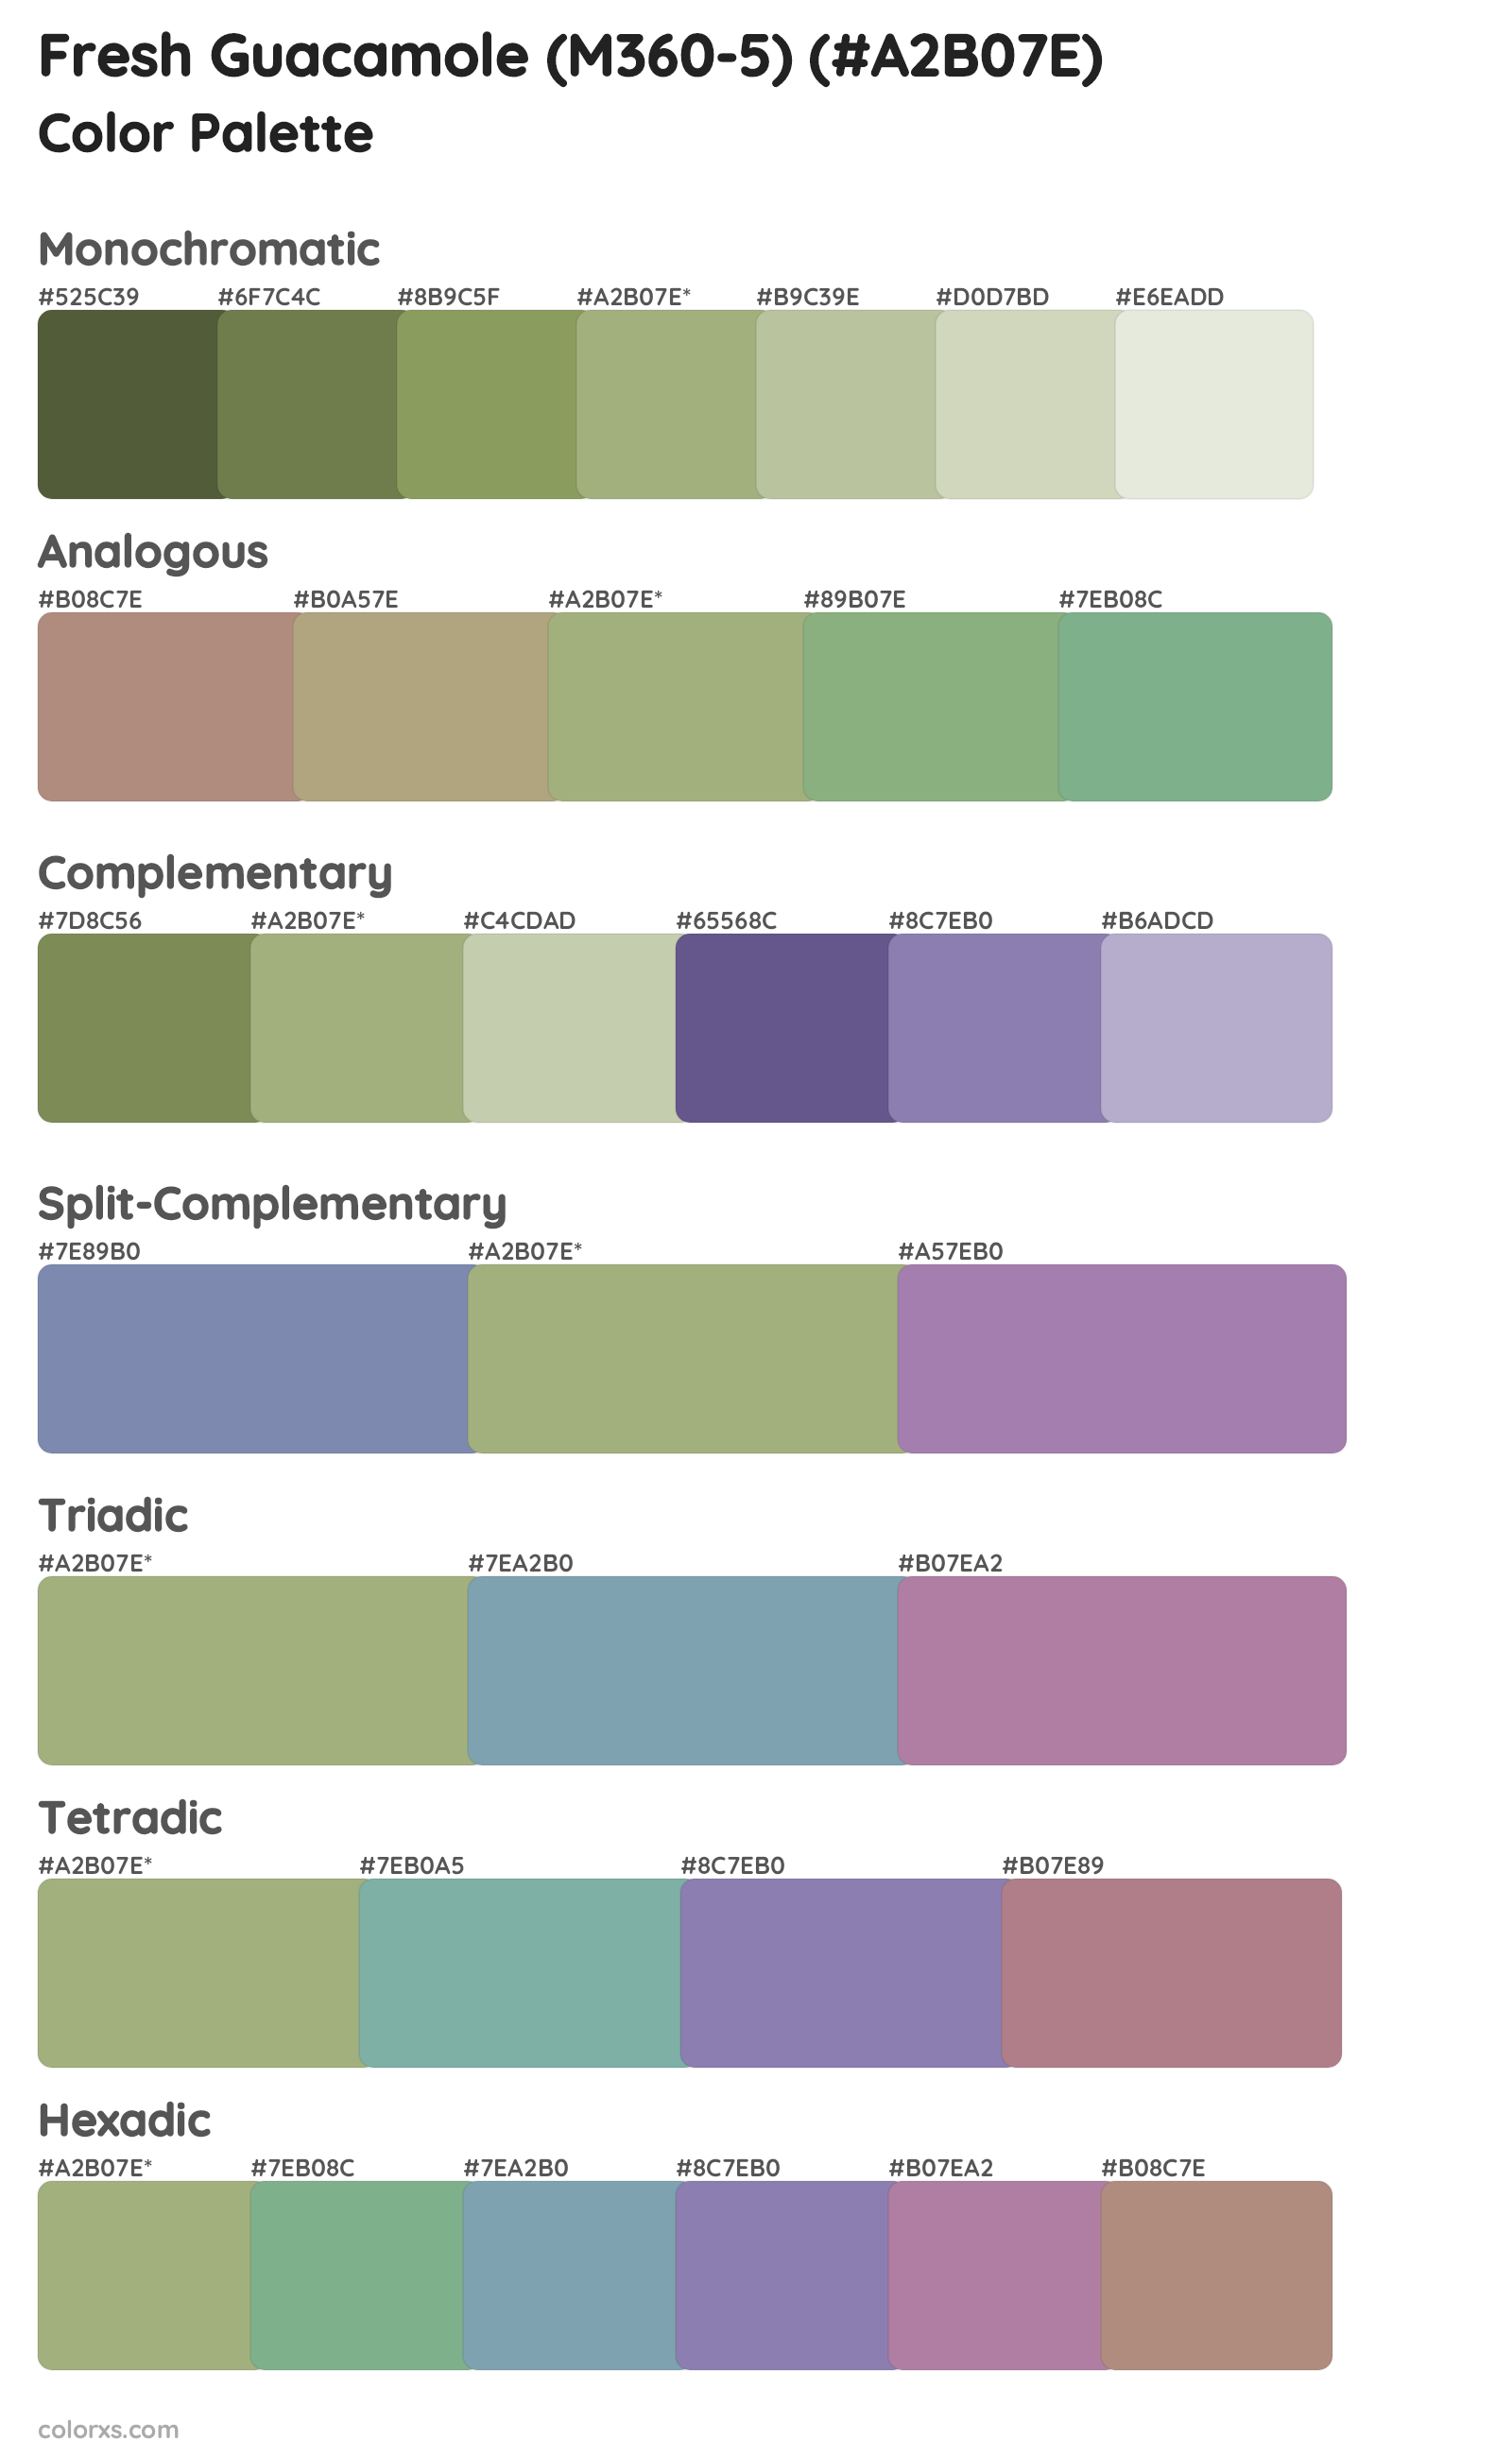 Fresh Guacamole (M360-5) Color Scheme Palettes